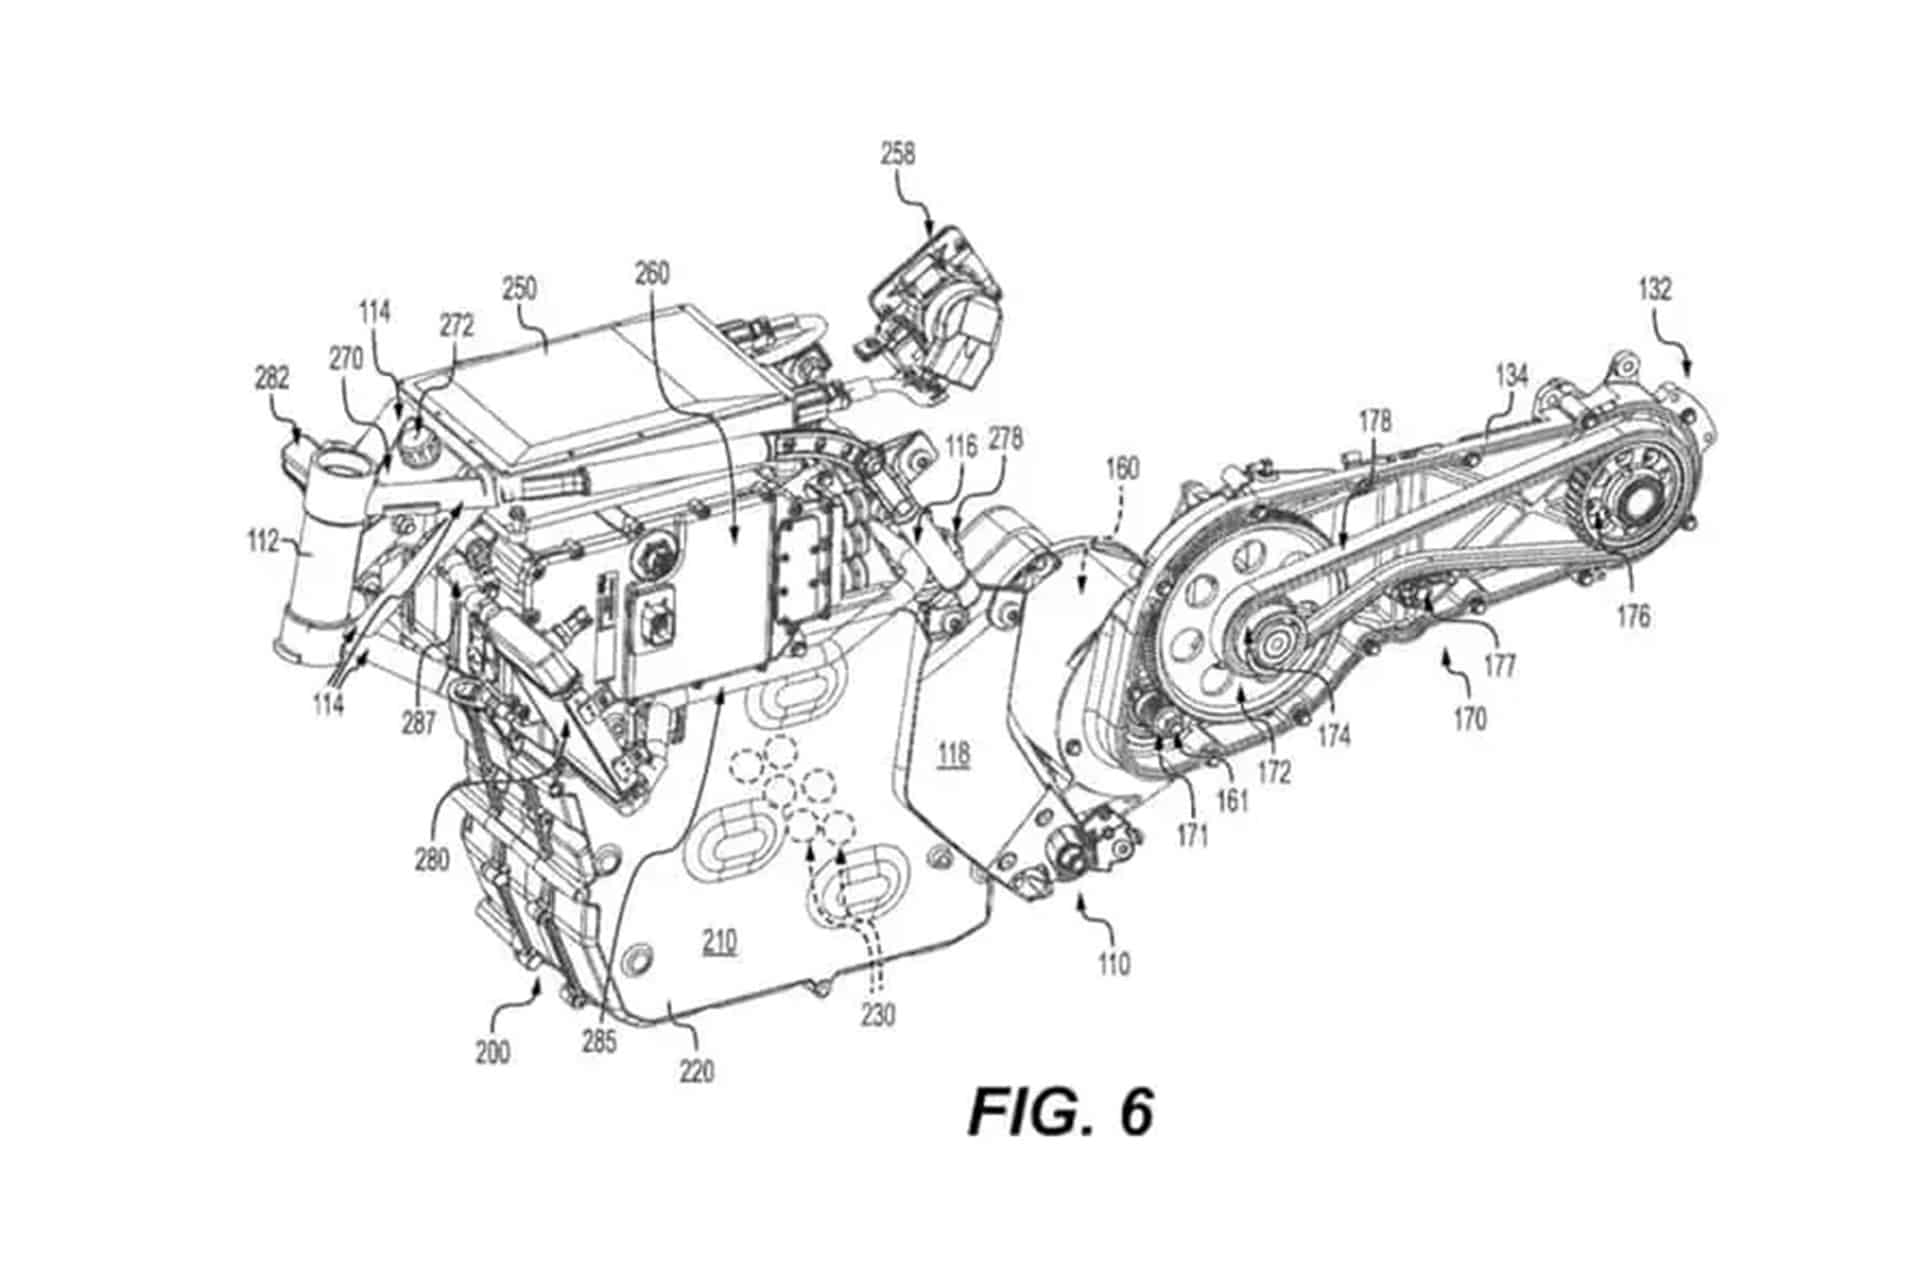 Can-Am registra nuevas patentes sobre un modelo eléctrico Offroad desconocido hasta el momento